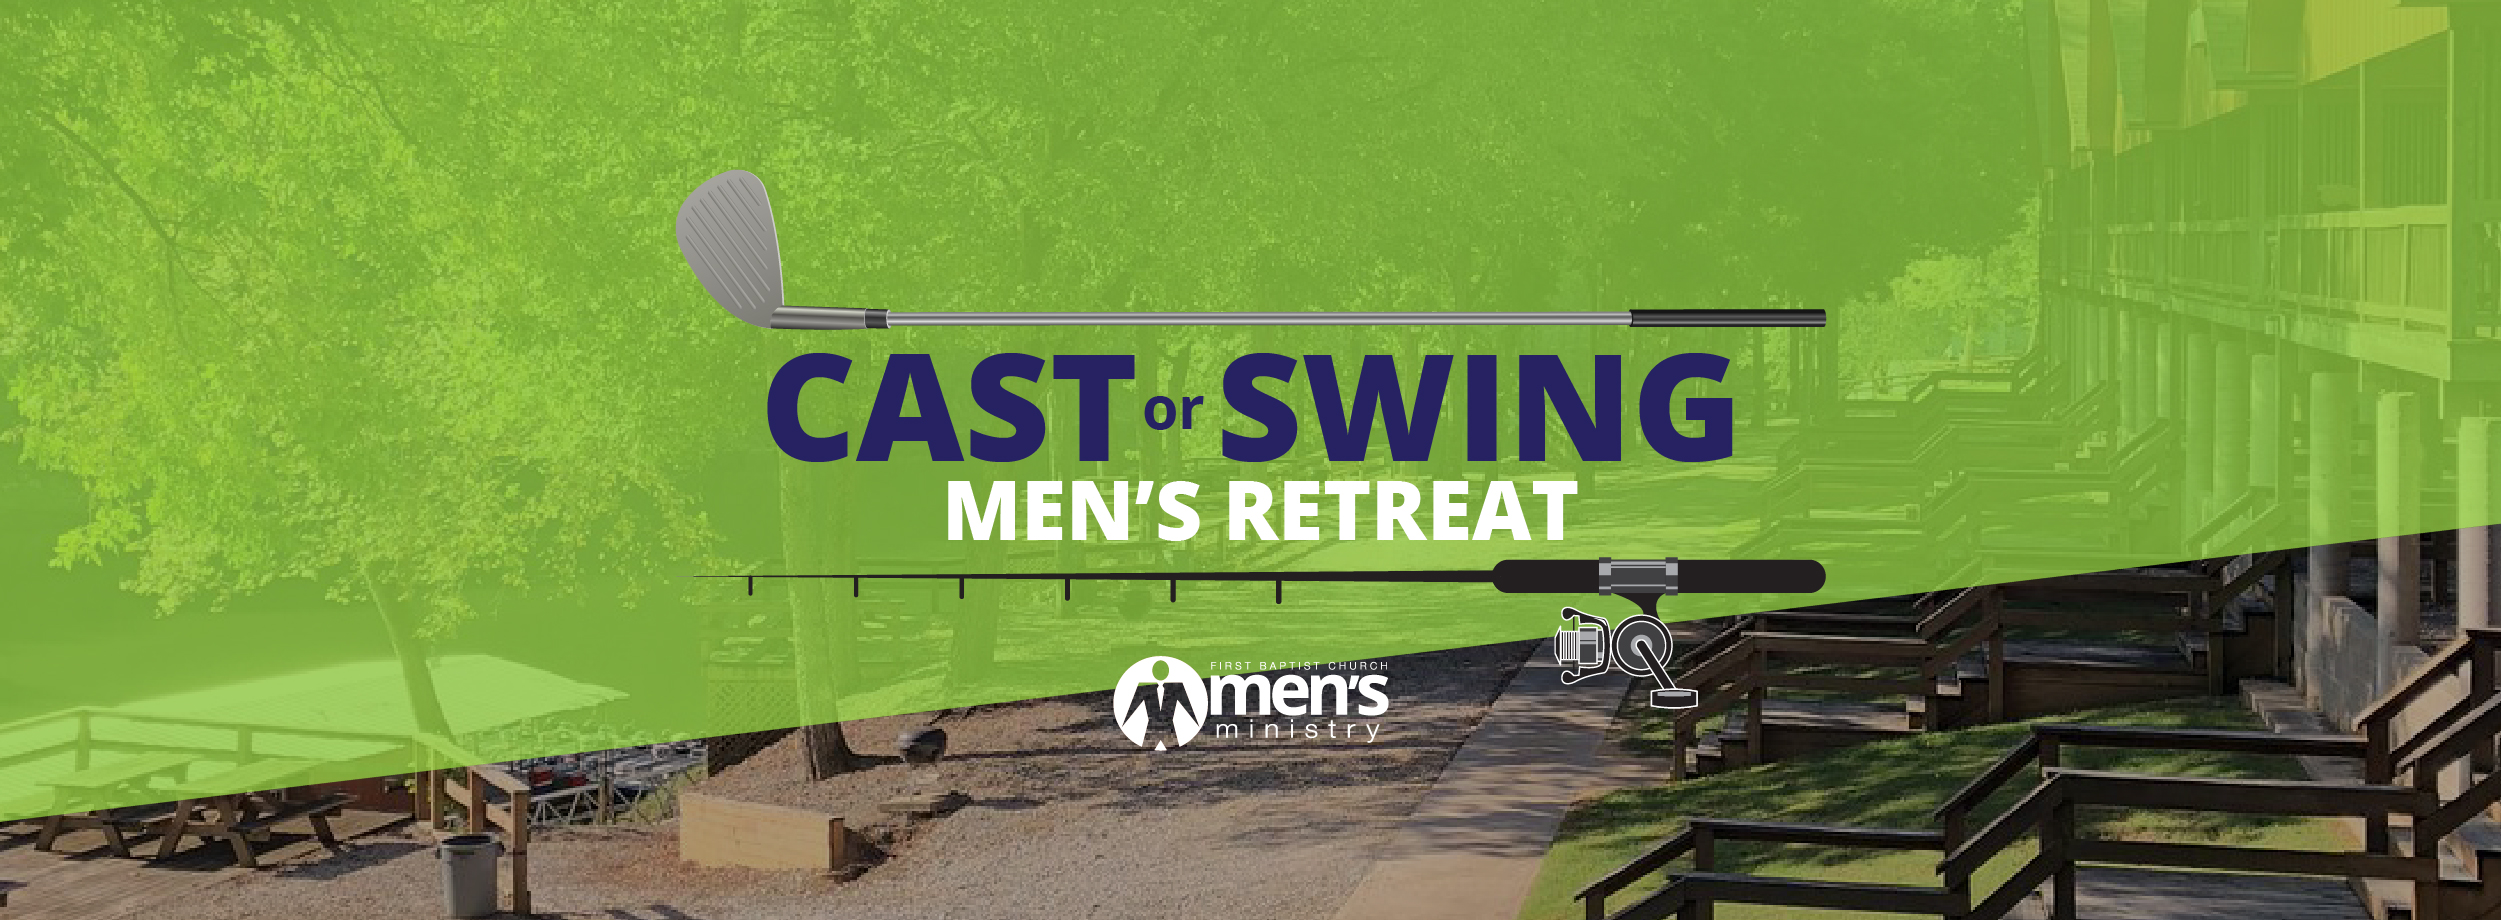 Cast or Swing Men’s Retreat